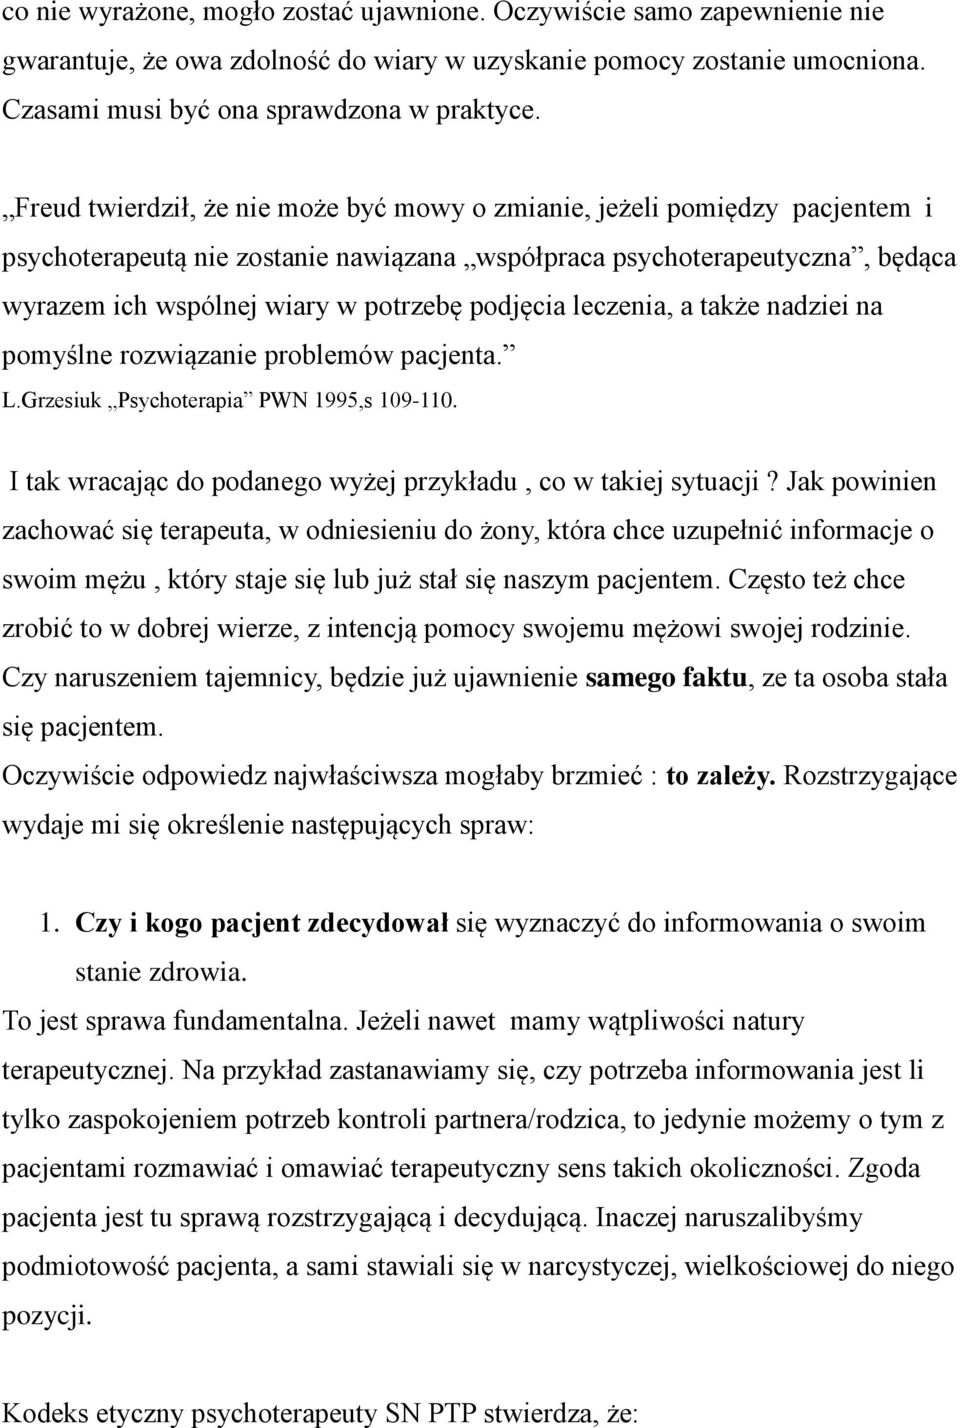 podjęcia leczenia, a także nadziei na pomyślne rozwiązanie problemów pacjenta. L.Grzesiuk Psychoterapia PWN 1995,s 109-110. I tak wracając do podanego wyżej przykładu, co w takiej sytuacji?